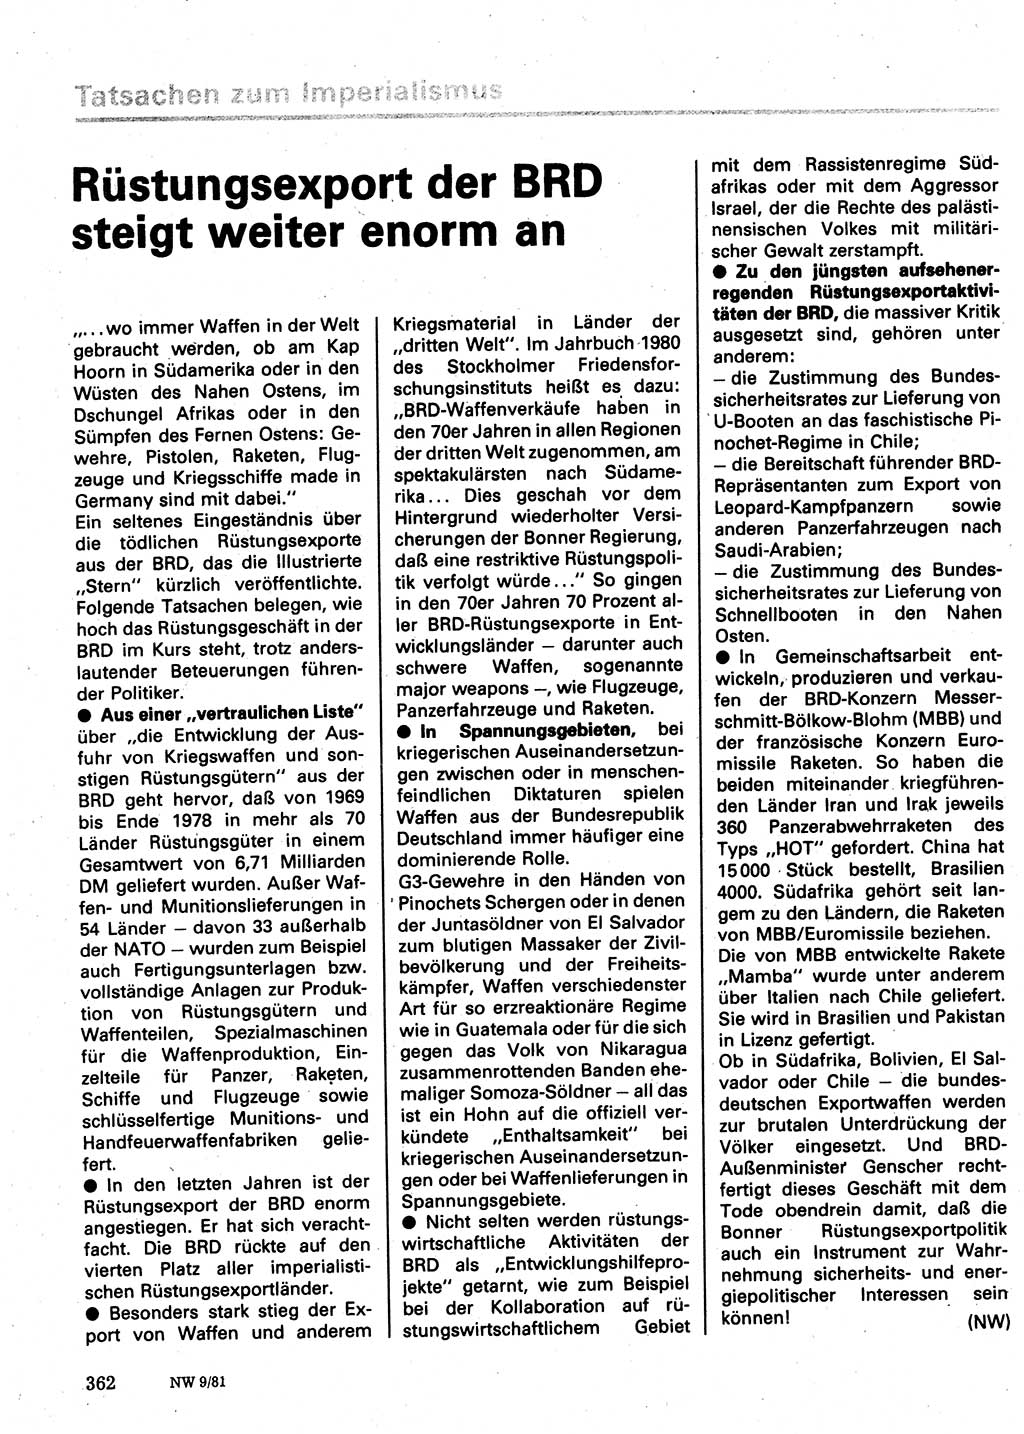 Neuer Weg (NW), Organ des Zentralkomitees (ZK) der SED (Sozialistische Einheitspartei Deutschlands) für Fragen des Parteilebens, 36. Jahrgang [Deutsche Demokratische Republik (DDR)] 1981, Seite 362 (NW ZK SED DDR 1981, S. 362)